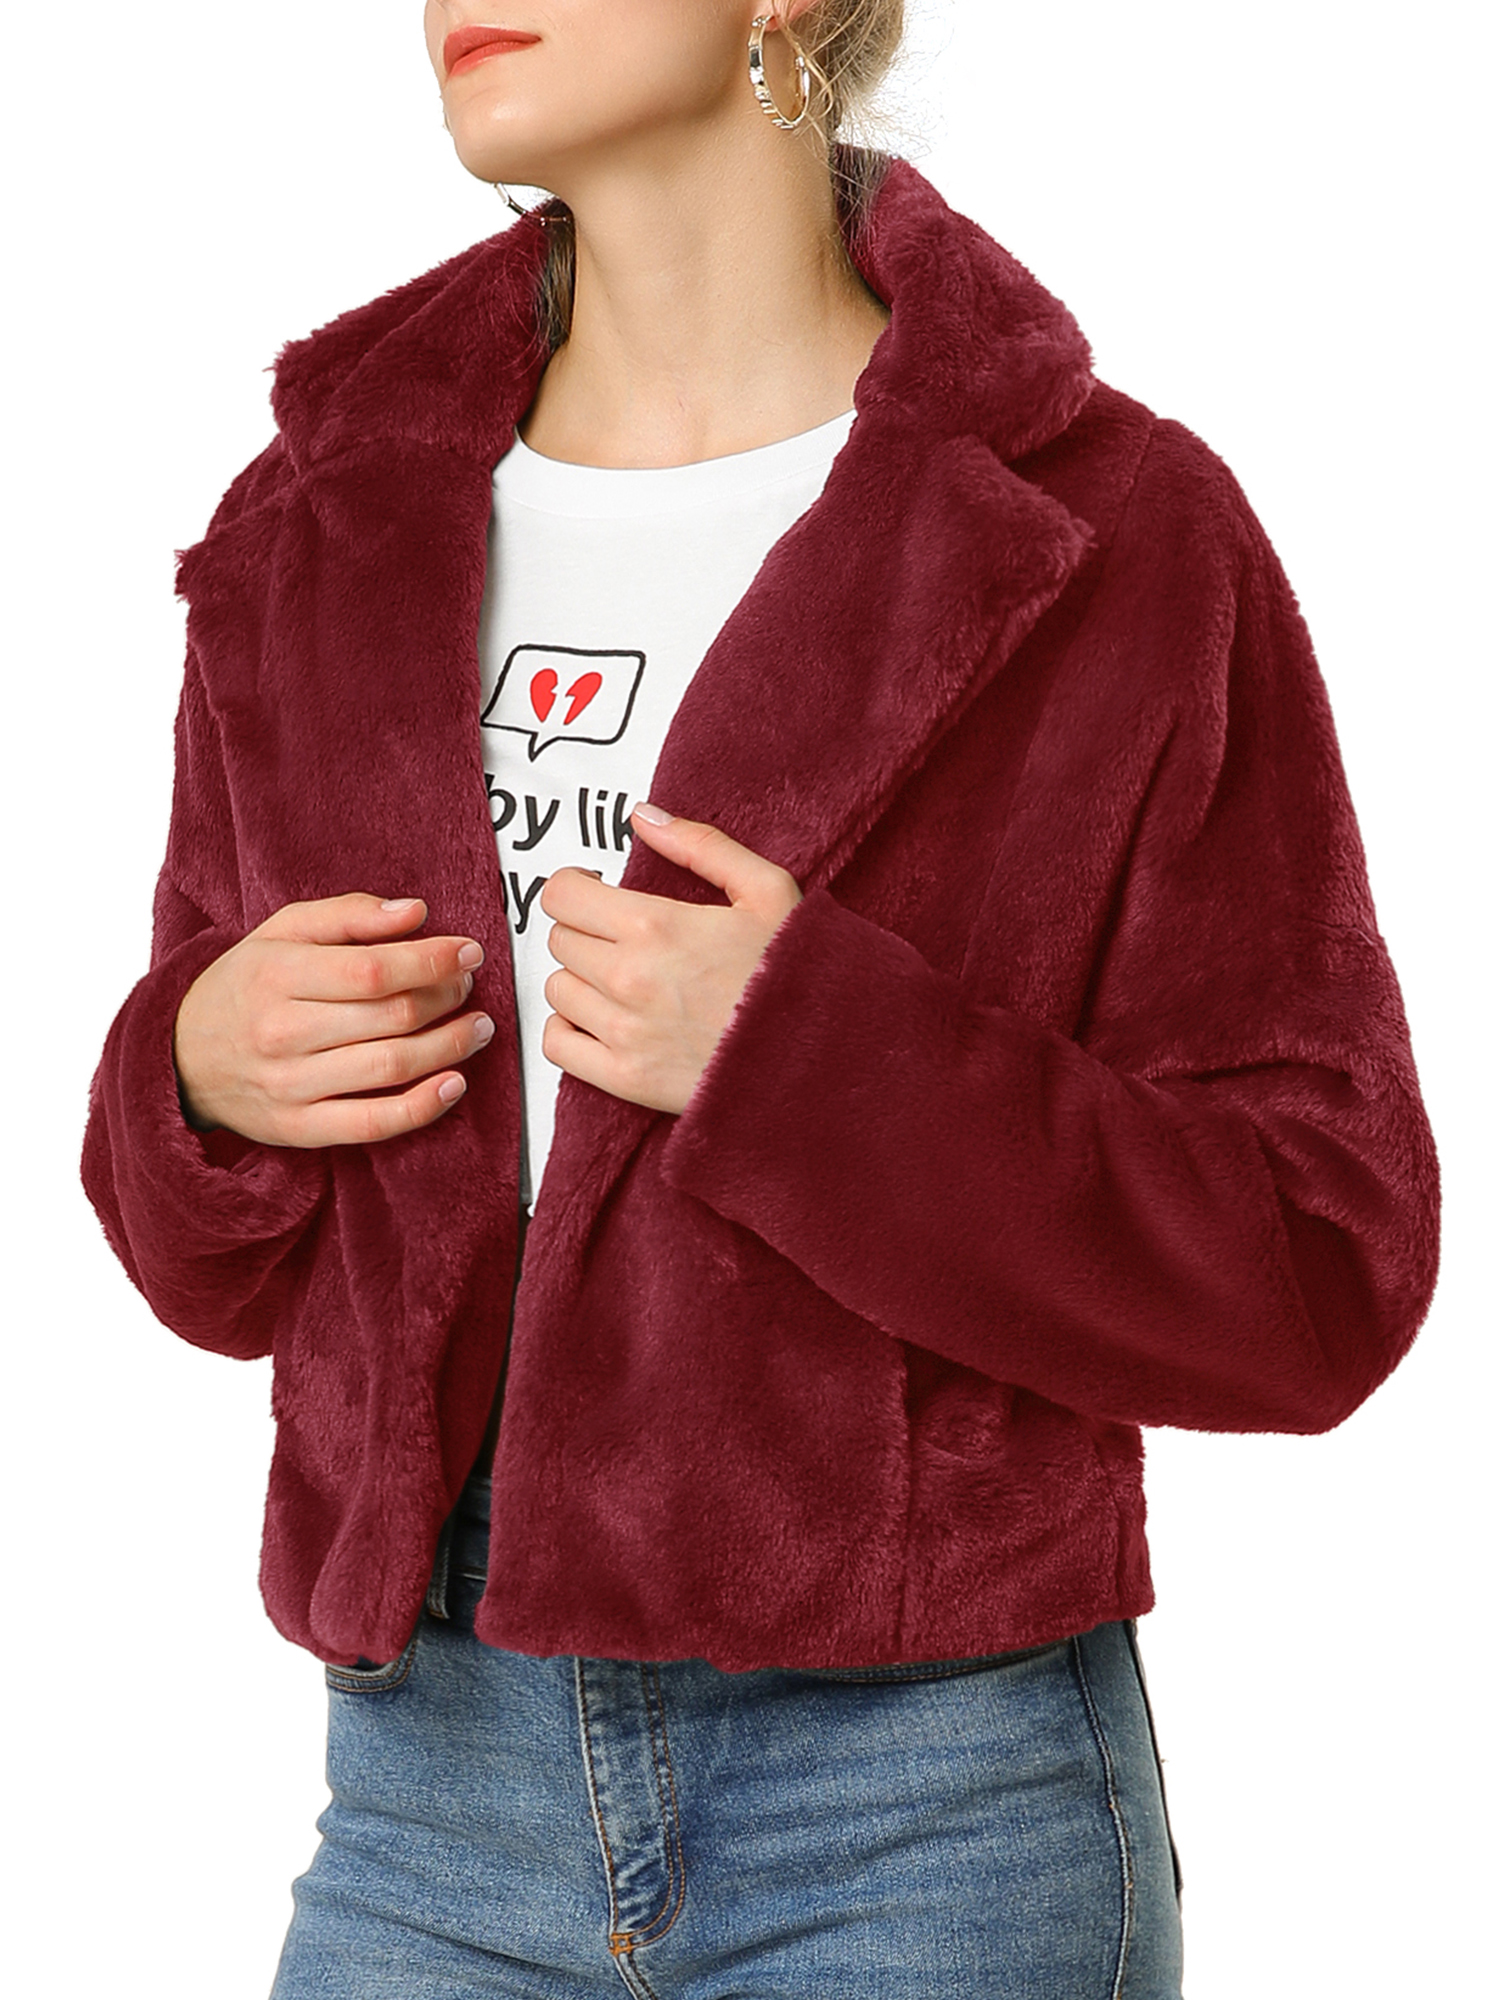 Unique Bargains Women's Cropped Jacket Notch Lapel Faux Fur Fluffy Coat L Burgundy - image 2 of 7